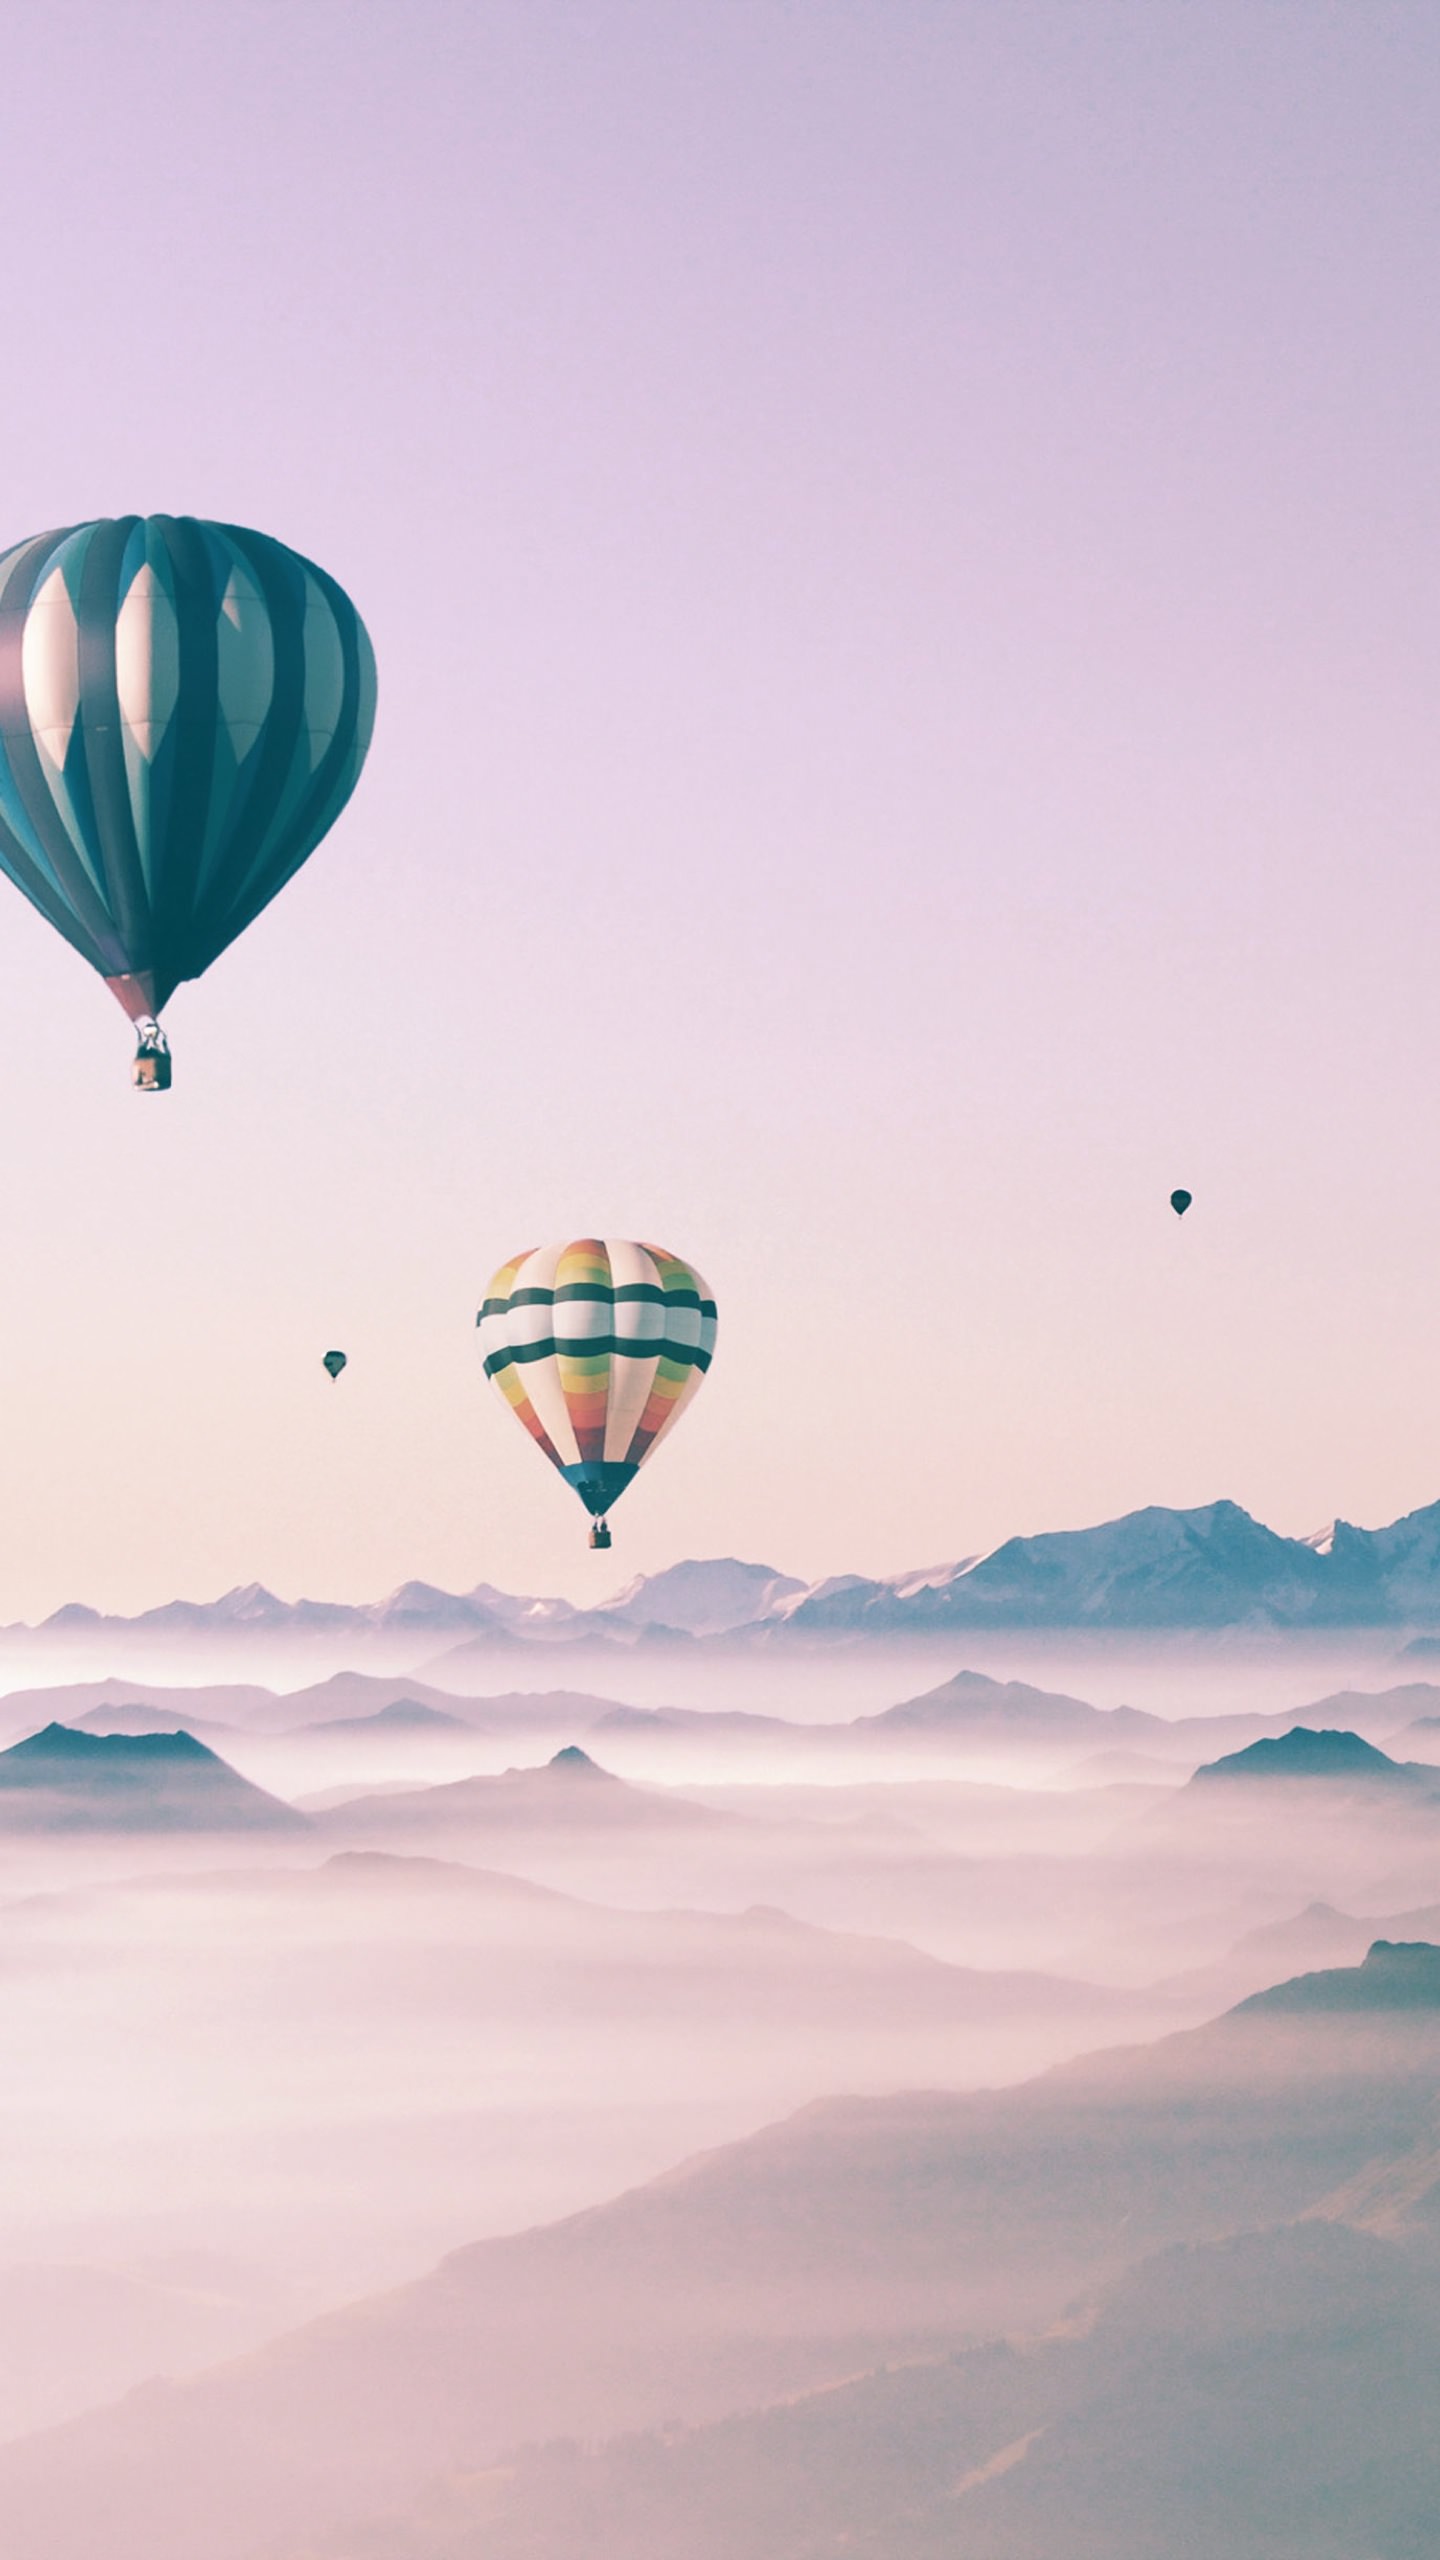 wallpaper lucu android,hot air ballooning,hot air balloon,sky,parachute,air sports